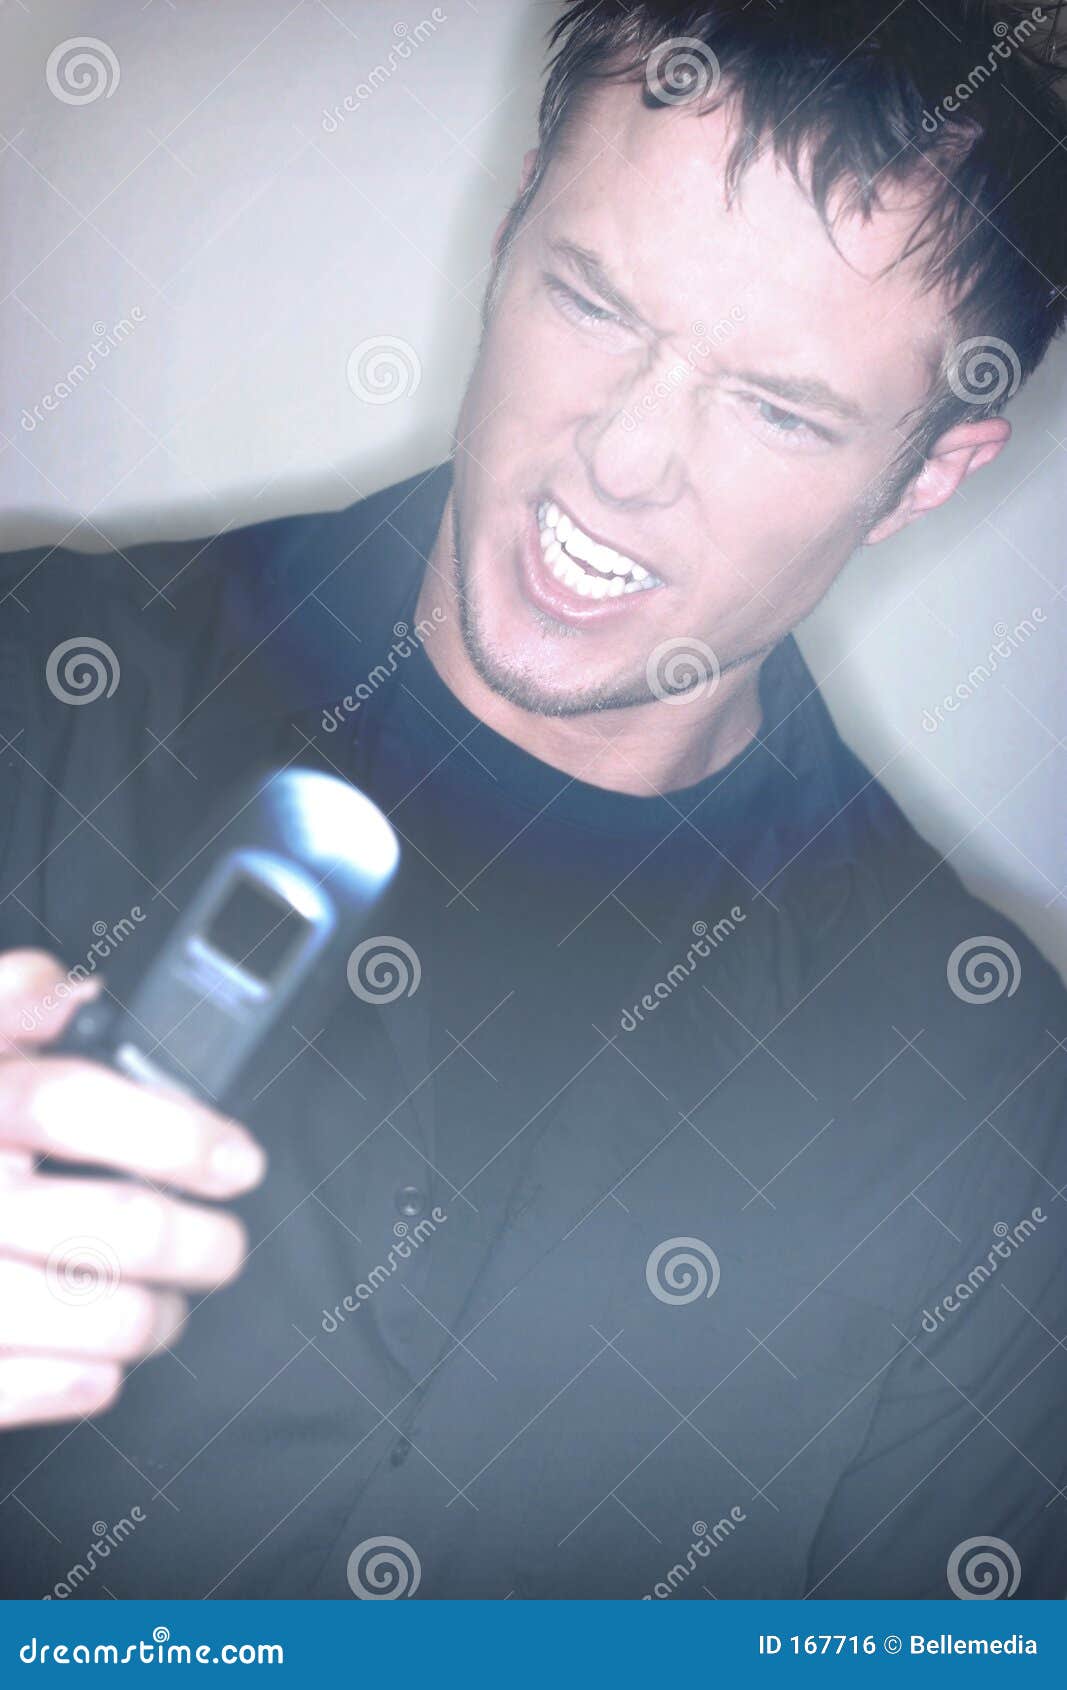 Frustrierter Mobiltelefon-Benutzer. Junger Mann verzieht in der Frustration an seinem Mobiltelefon Gesicht. Weicher Fokuseffekt angewendet.